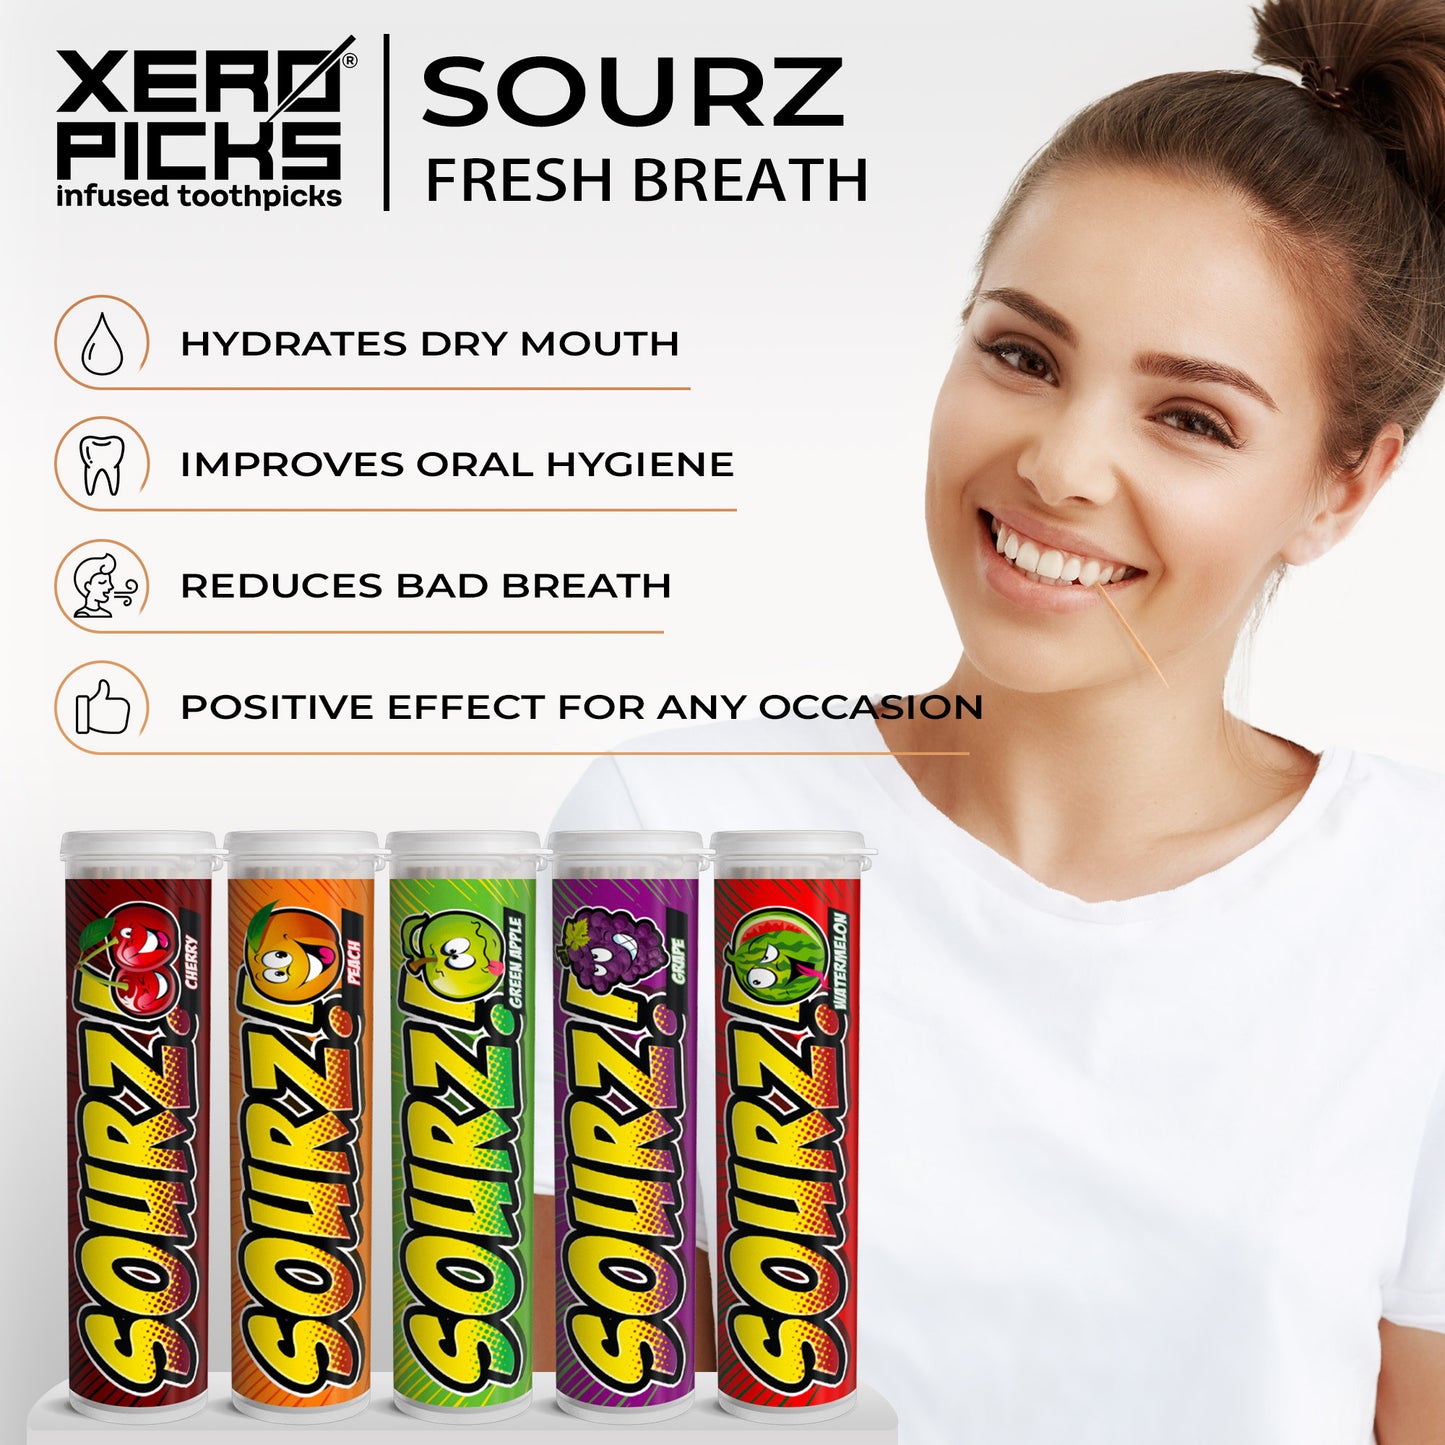 Xero Picks® Sourz infused toothpicks